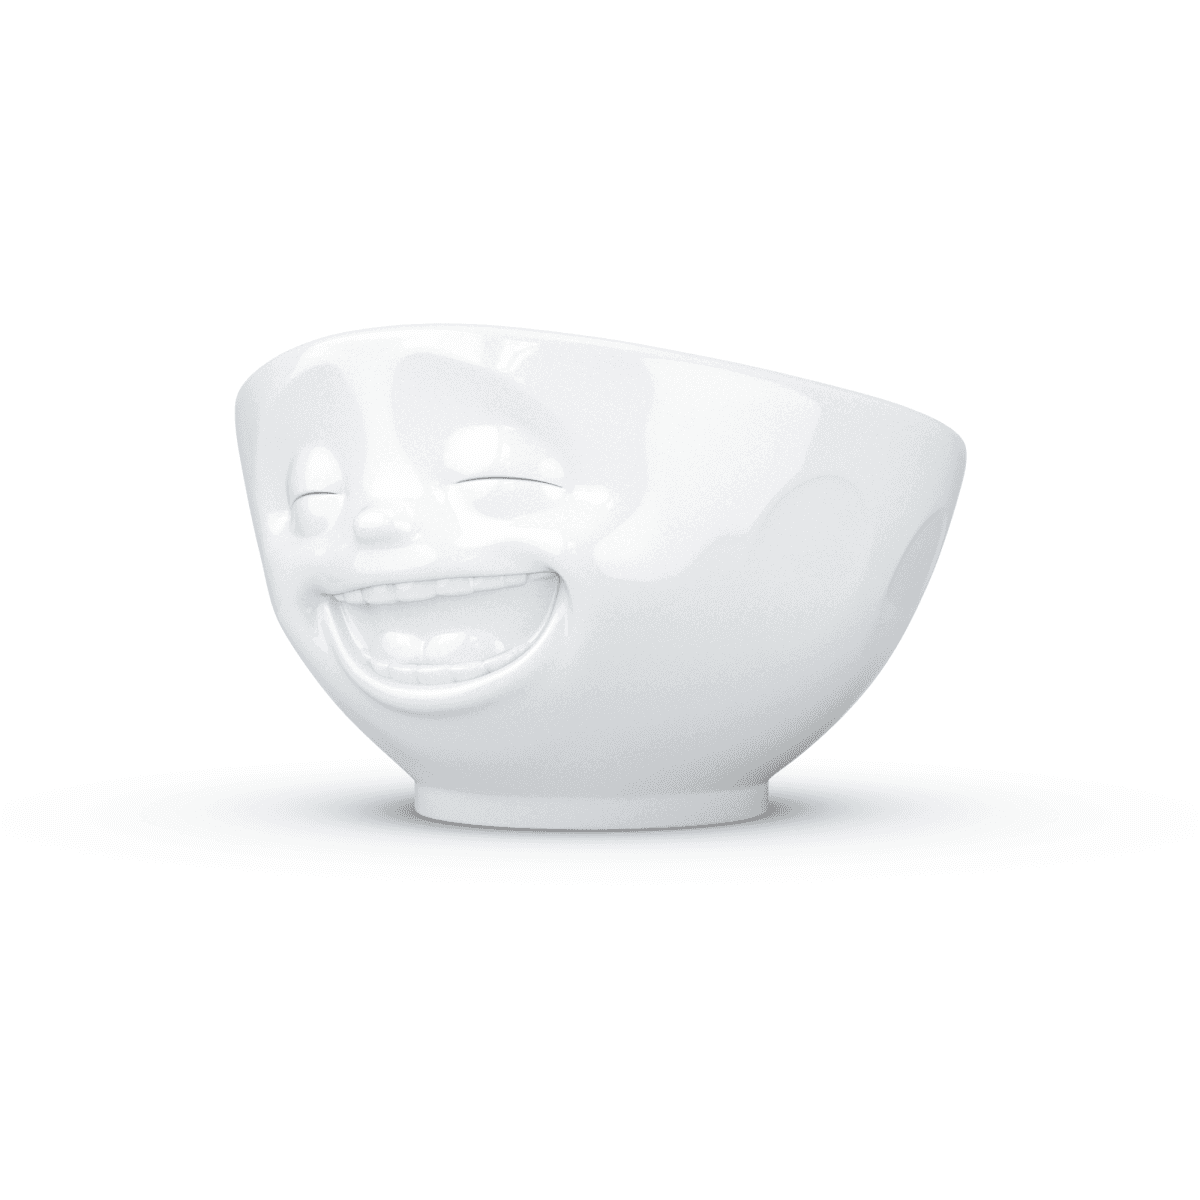 Immagine del prodotto Ciotola Risata 3D in Porcellana 1000 ml | TASSEN By Fiftyeight Products